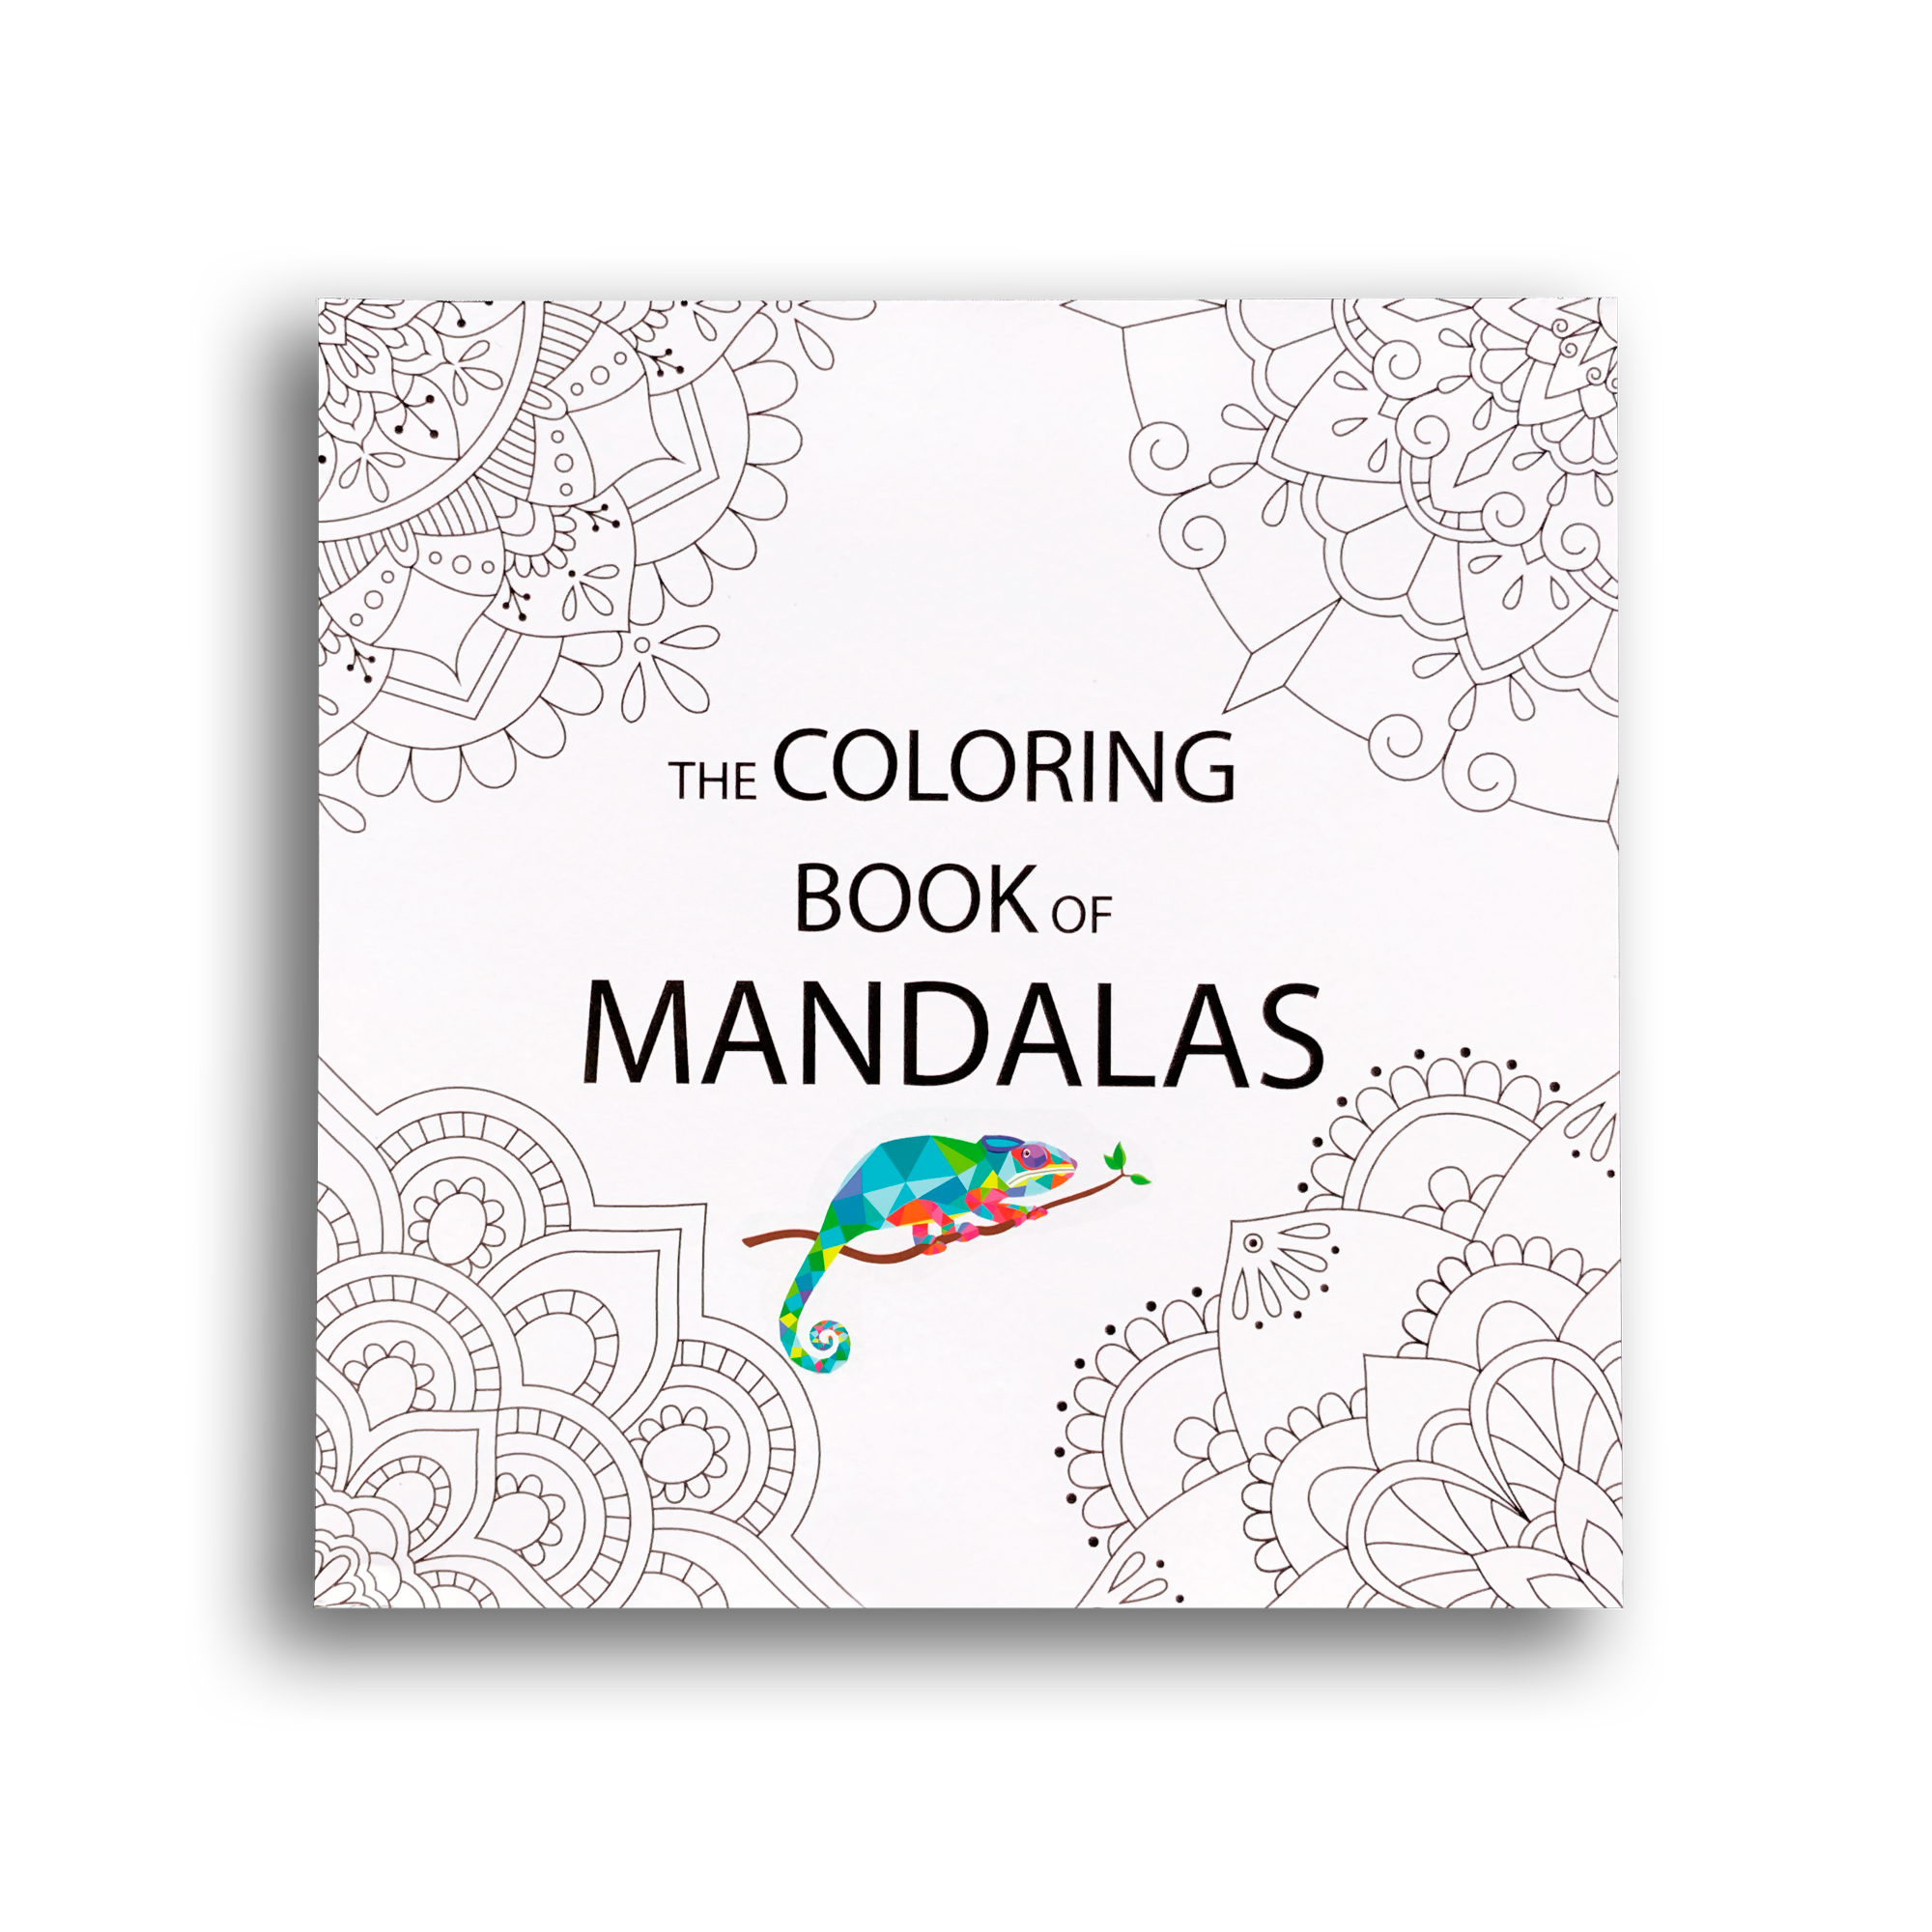 The Coloring Book of Mandalas